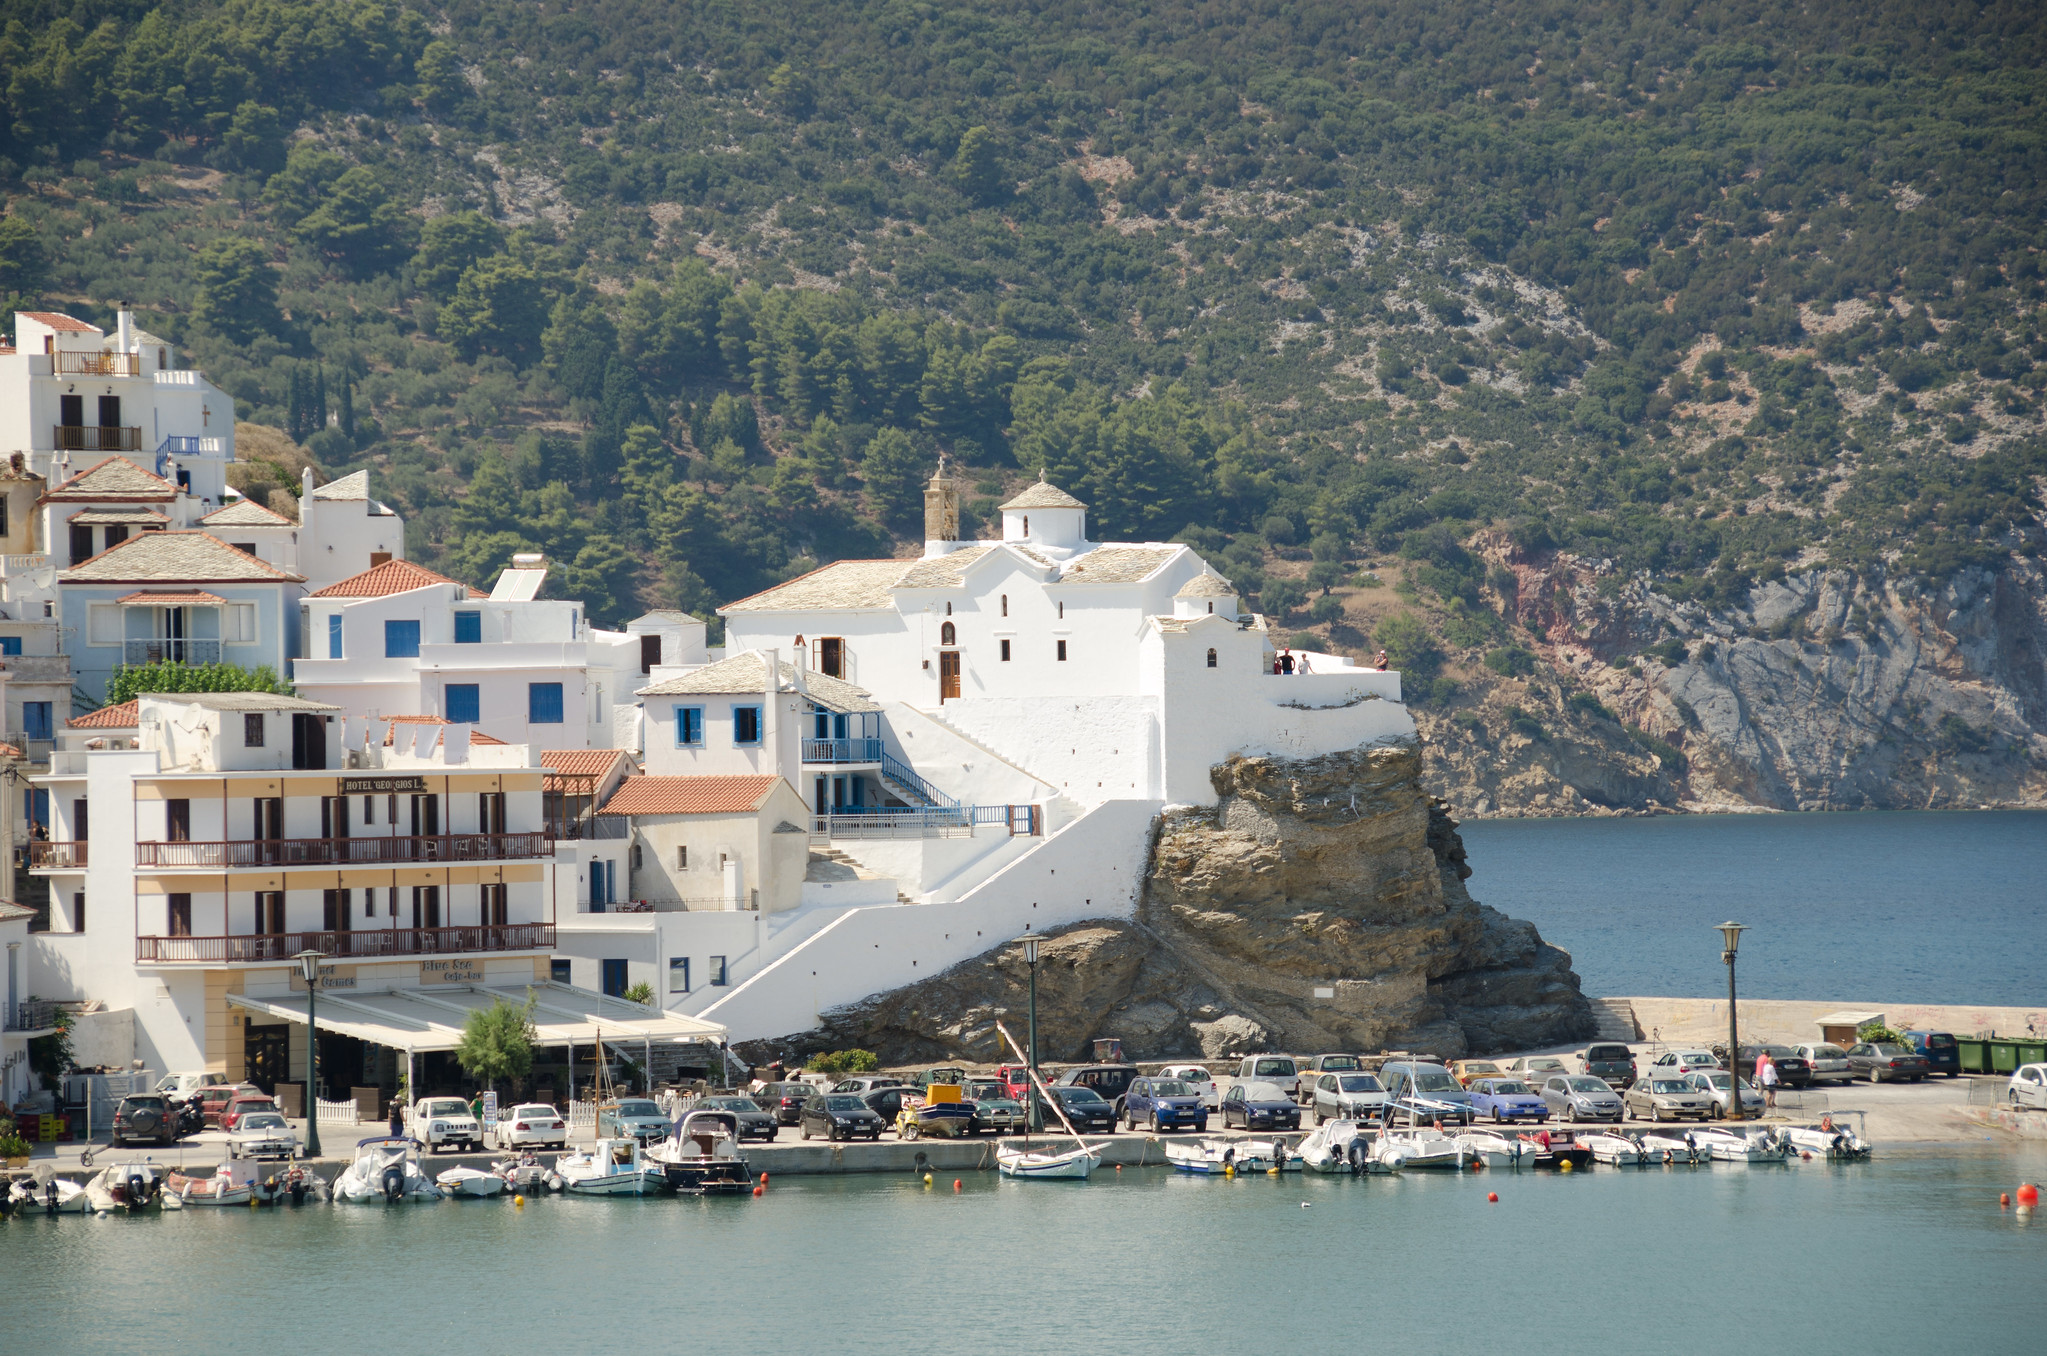 10 Best Things to do in Skopelos, Greece